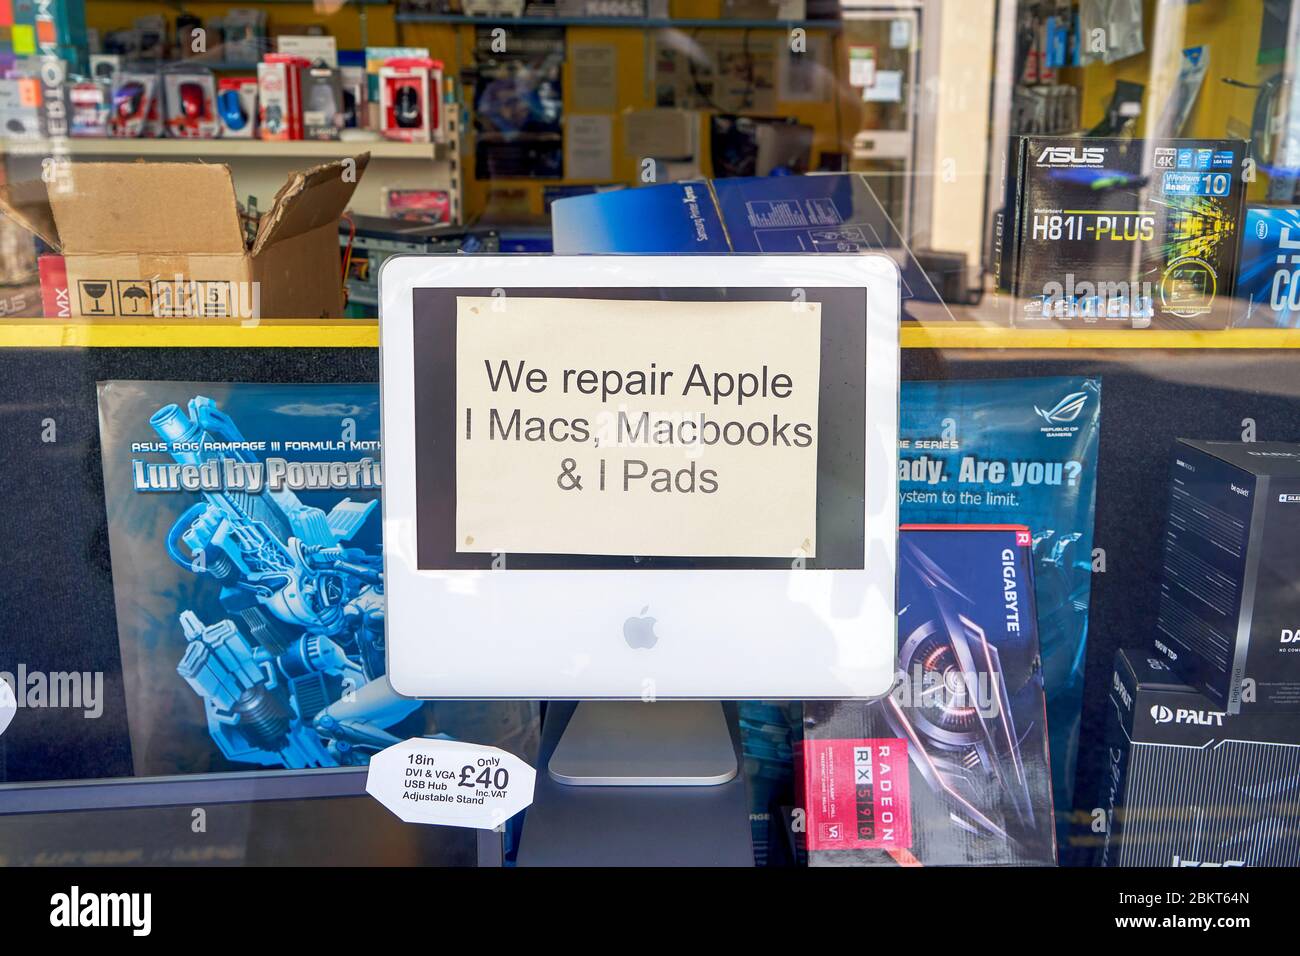 Ancien ordinateur iMac dans la fenêtre de la boutique avec avis annonçant un service de réparation pour les appareils Apple Banque D'Images